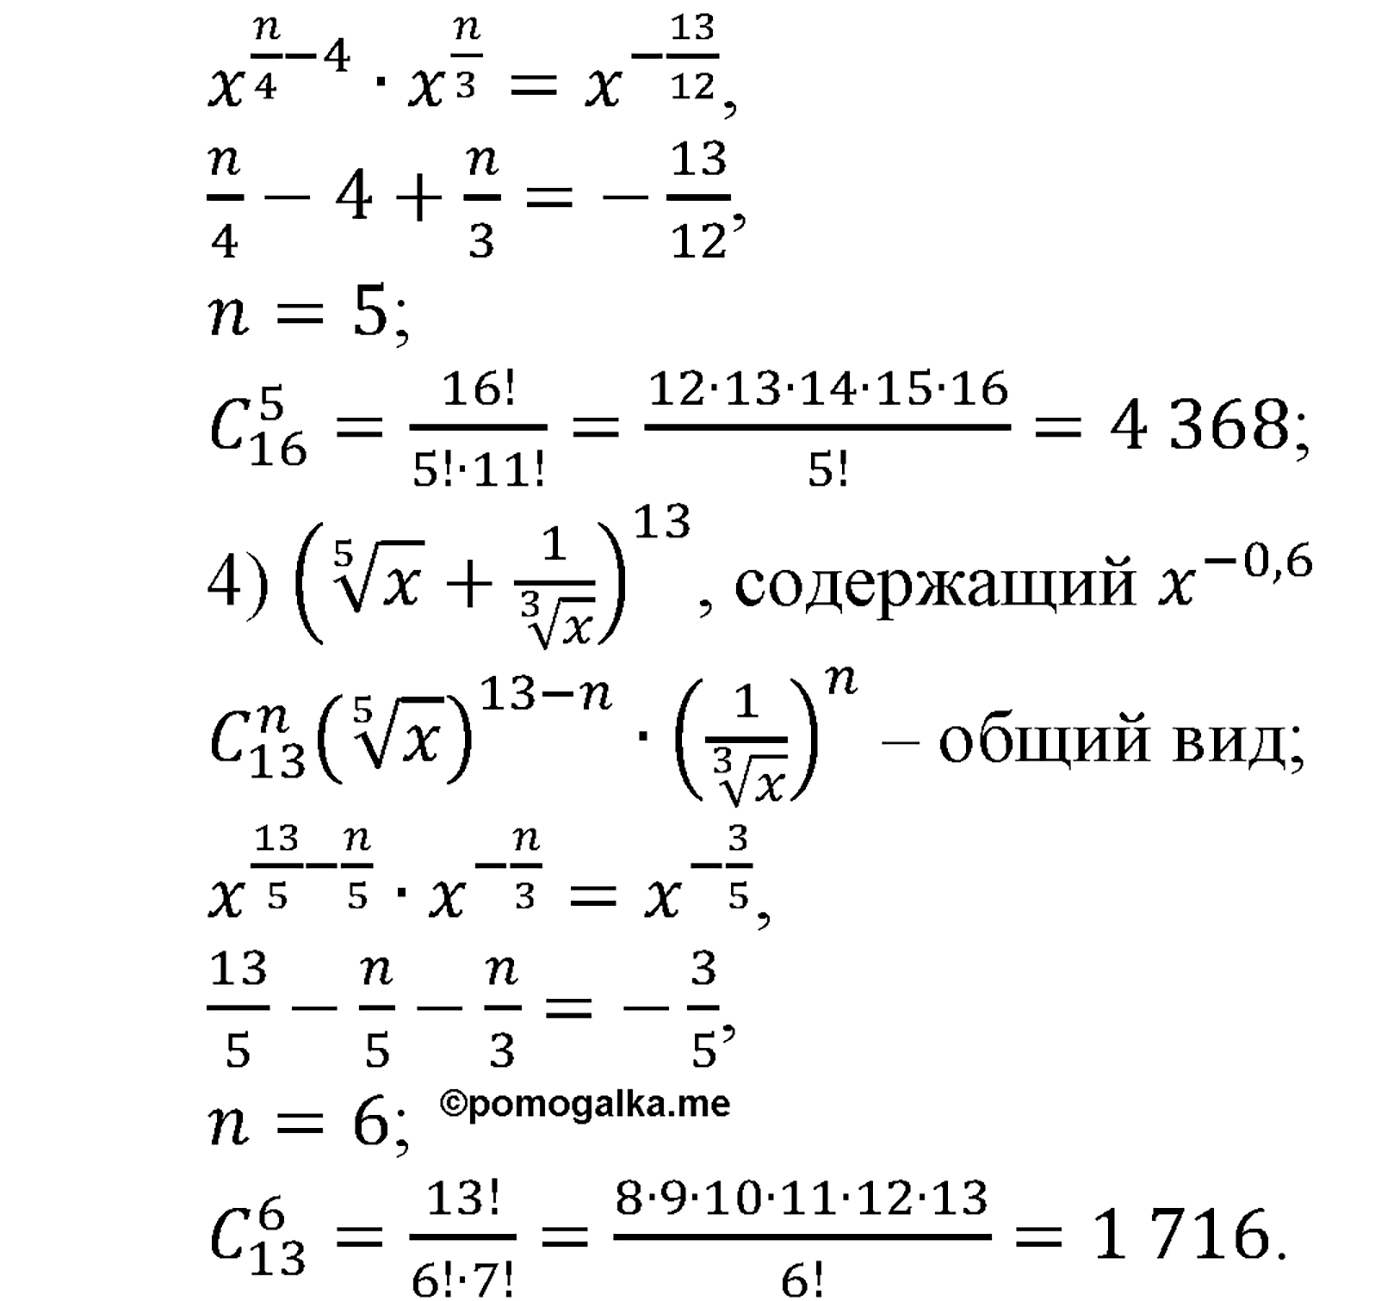 разбор задачи №1114 по алгебре за 10-11 класс из учебника Алимова, Колягина